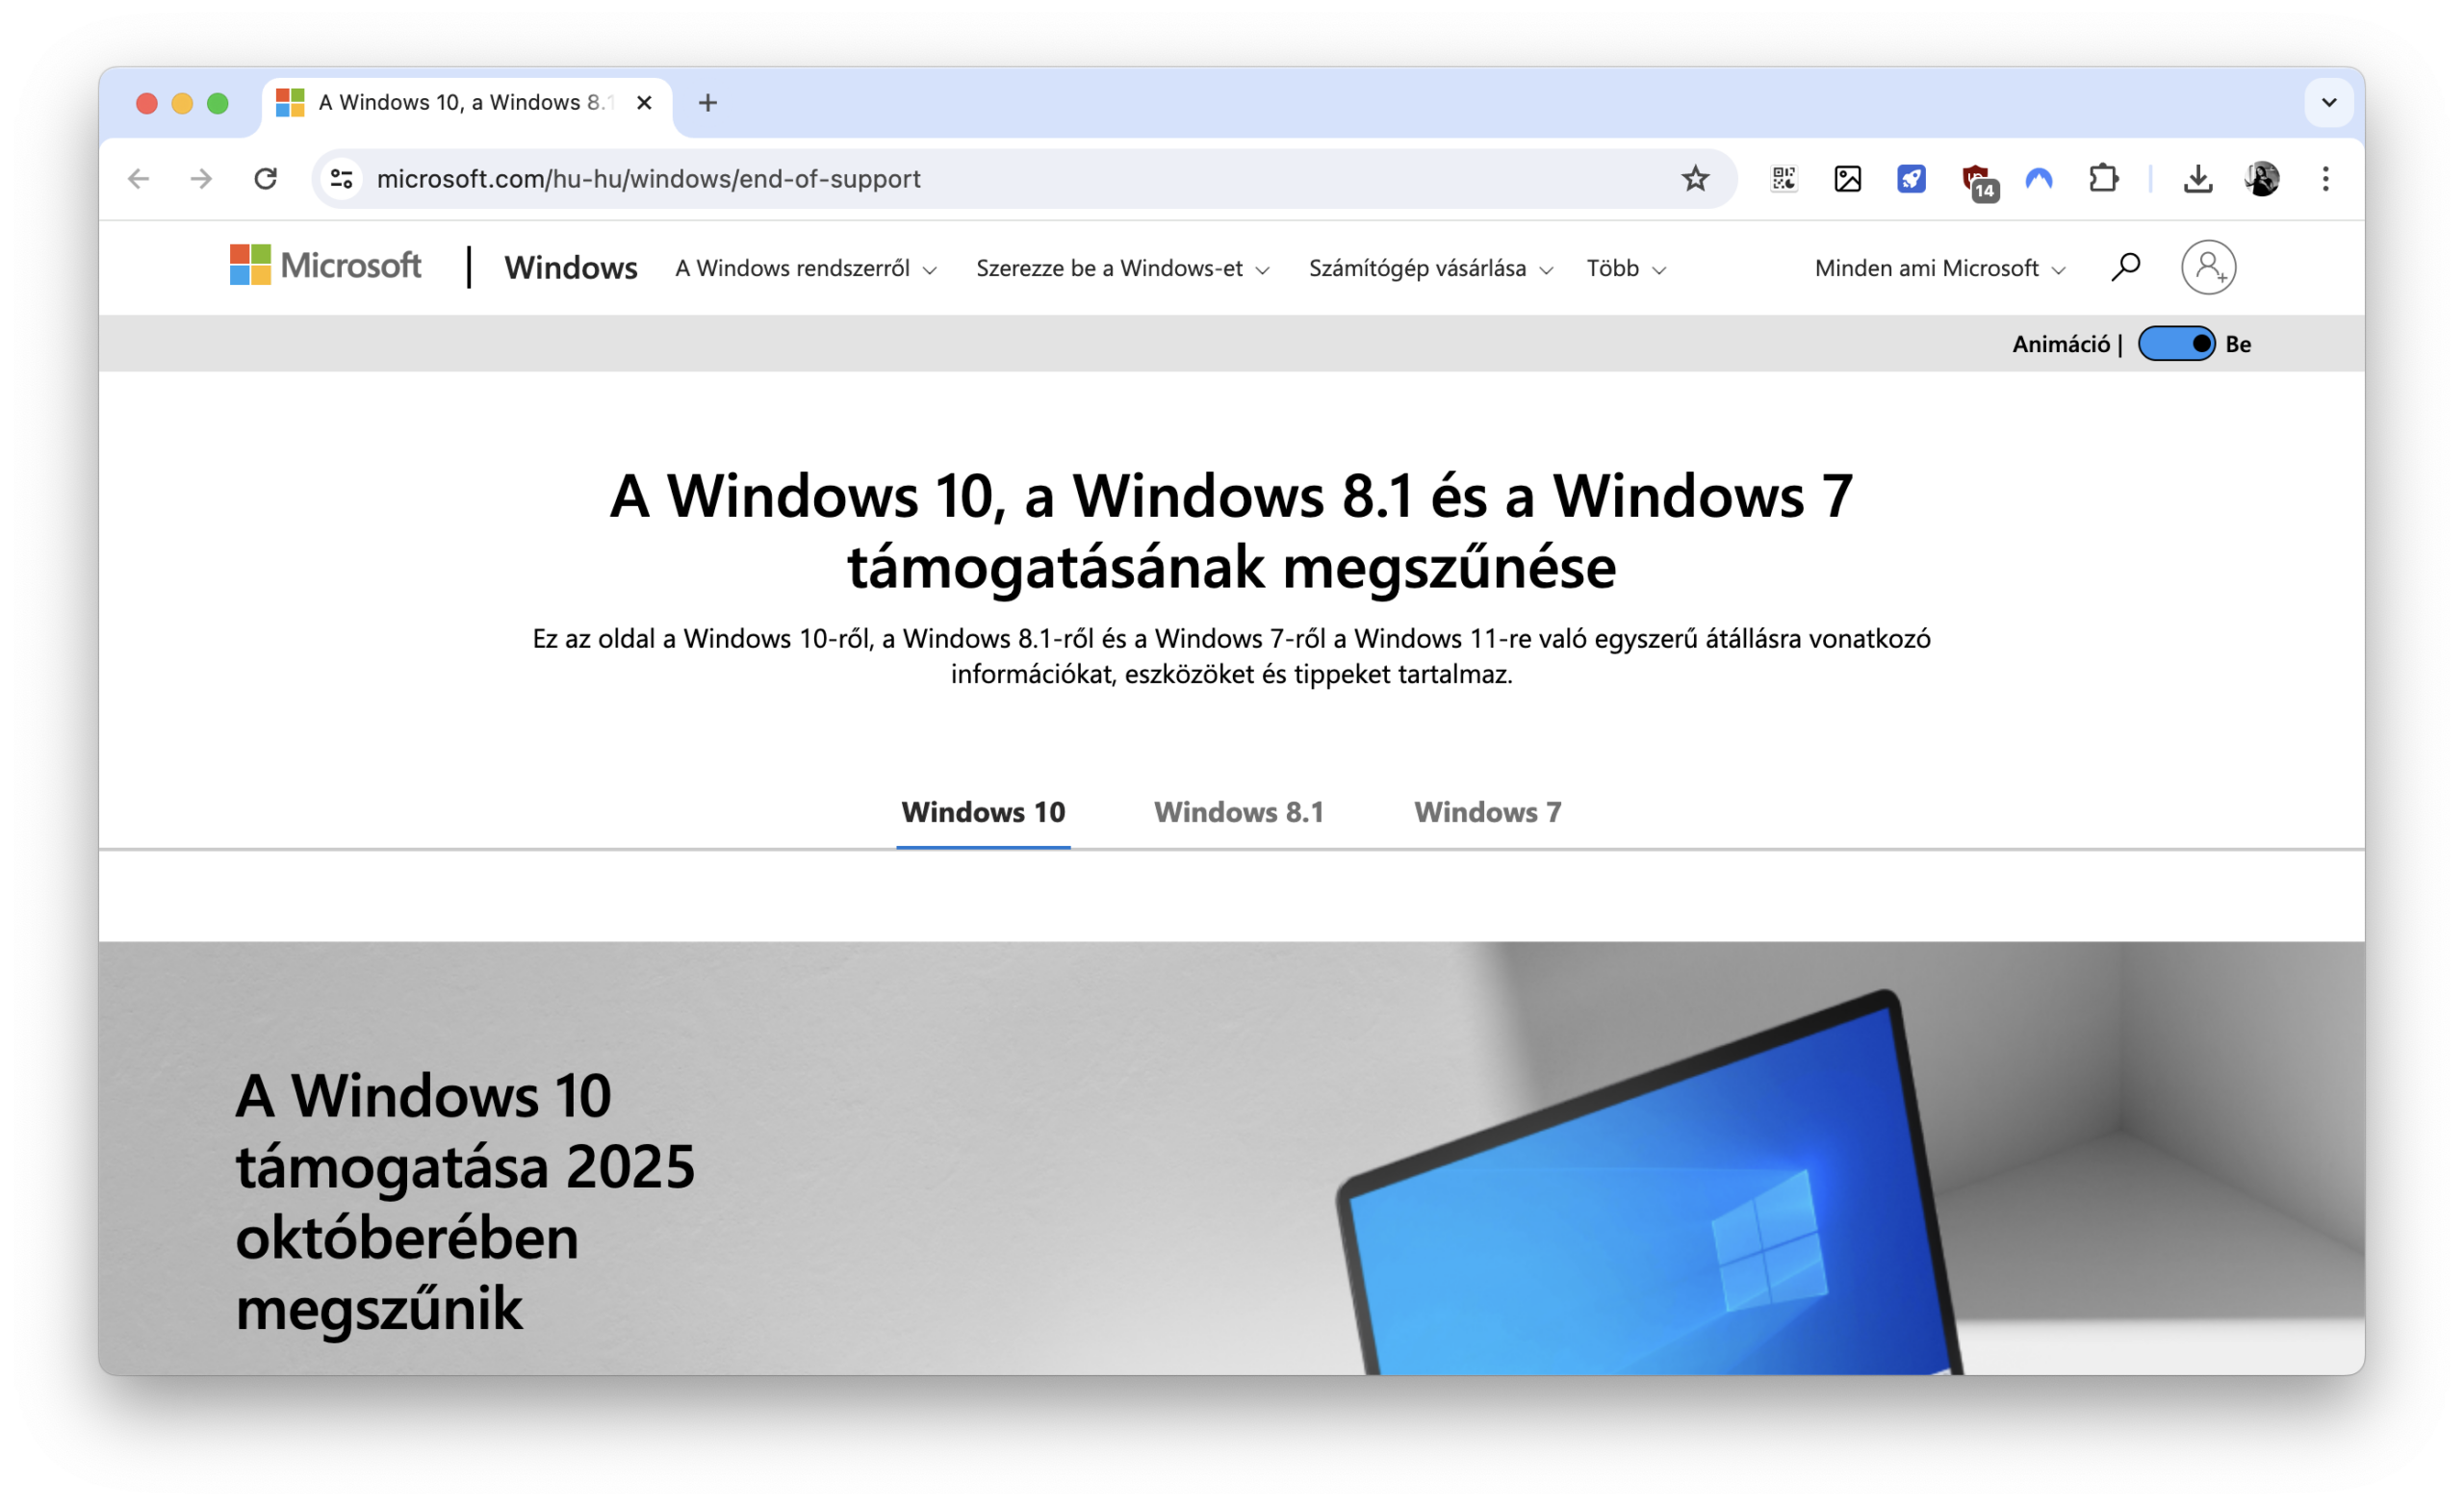 A Windows 10 is felkerült a 8.1 és 7 mellé